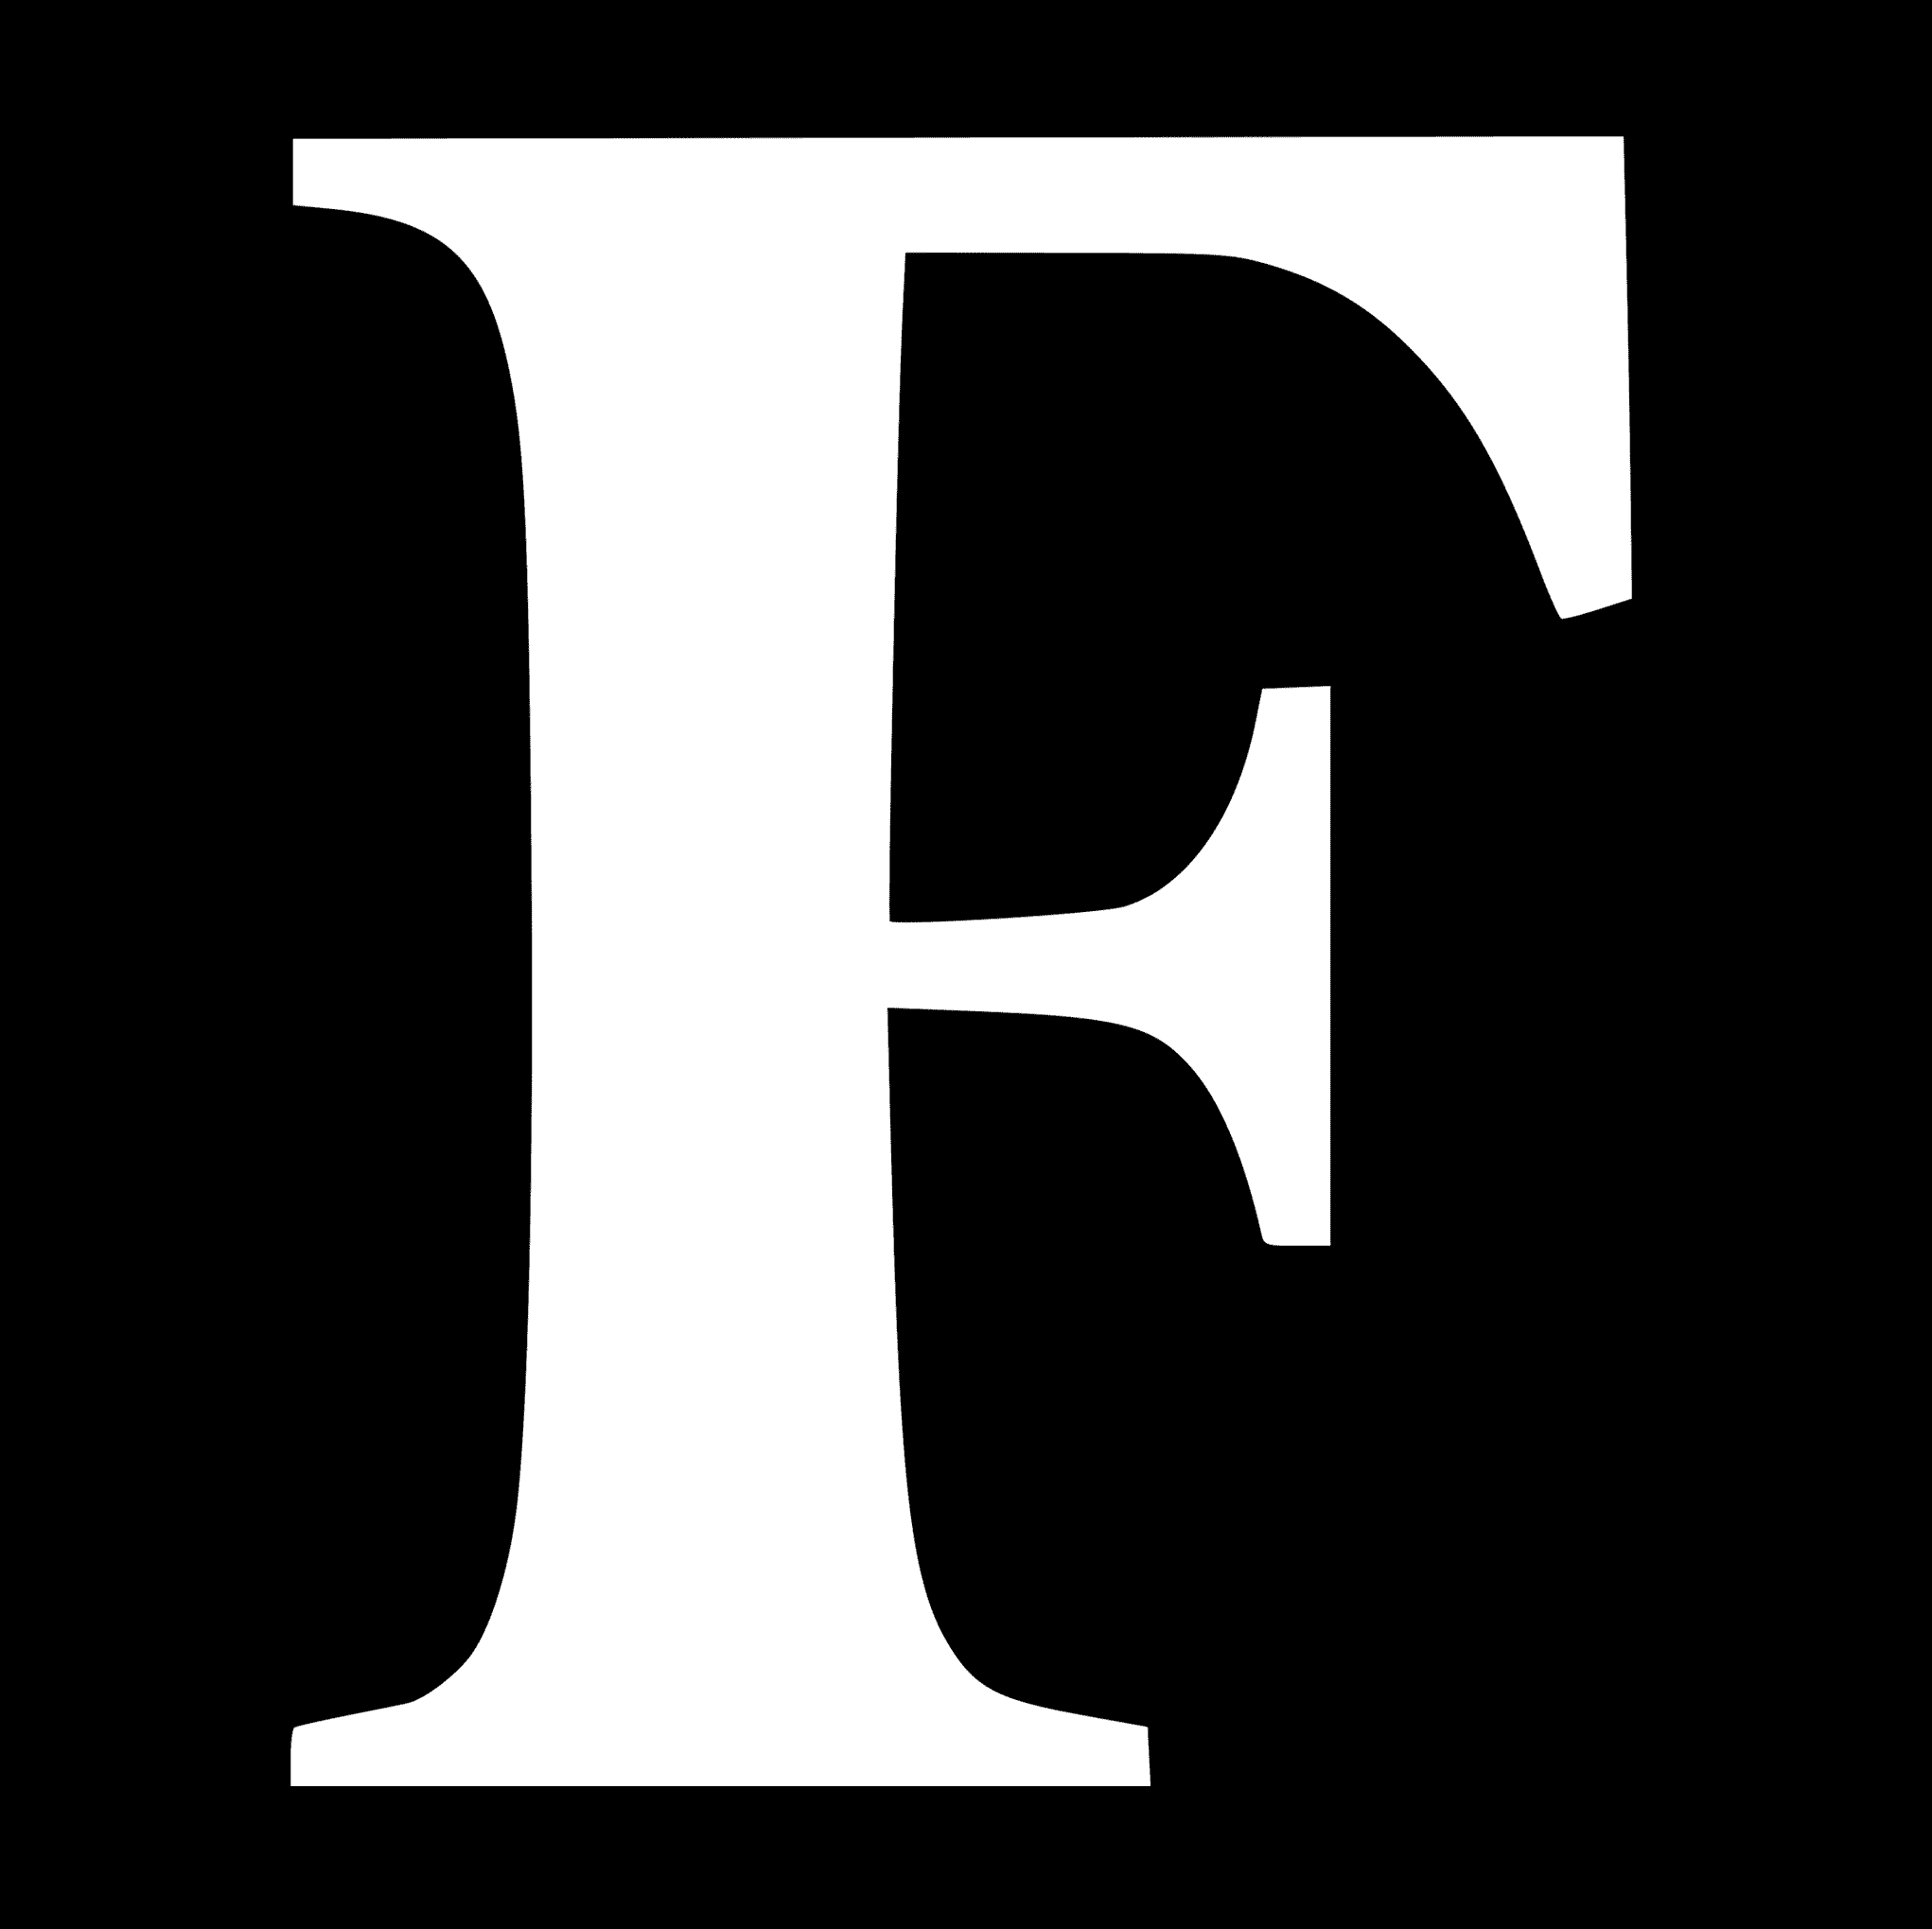 forbes.com logo